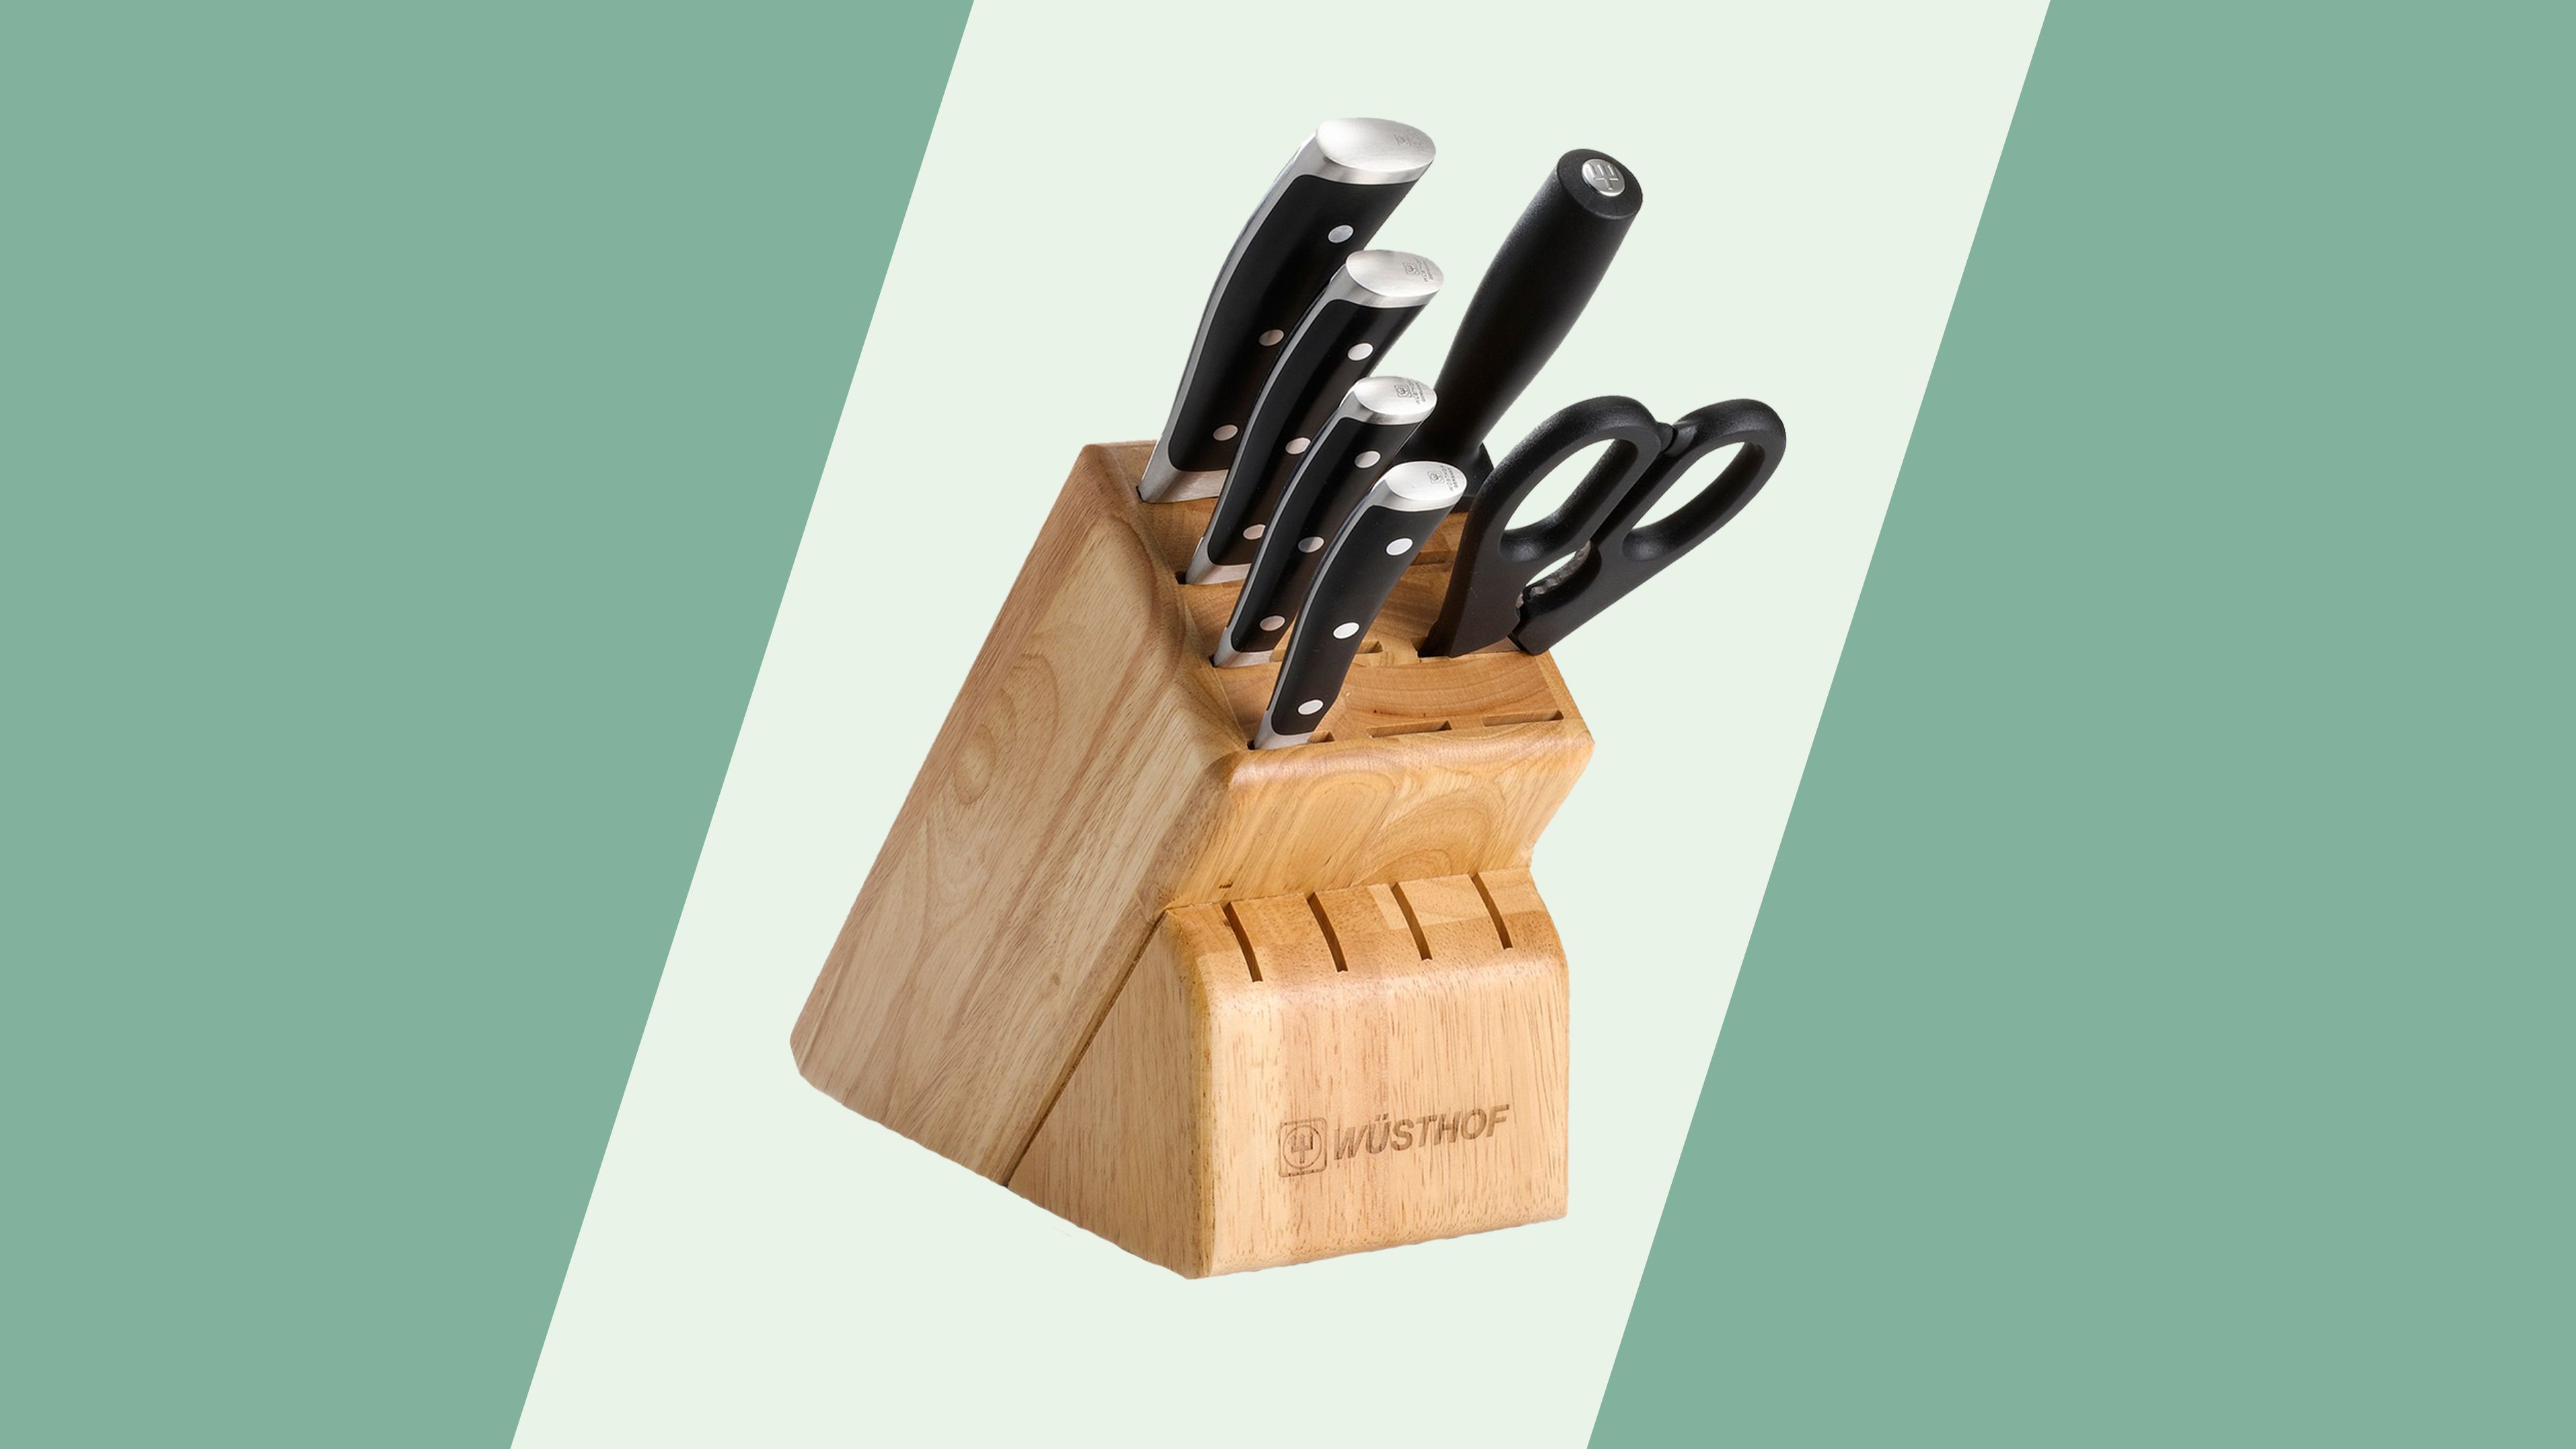 https://media.cnn.com/api/v1/images/stellar/prod/200917110012-best-kitchen-knife-set-wsthof-classic-ikon-7-piece-walnut-block-knife-set.jpg?q=w_3829,h_2154,x_0,y_0,c_fill